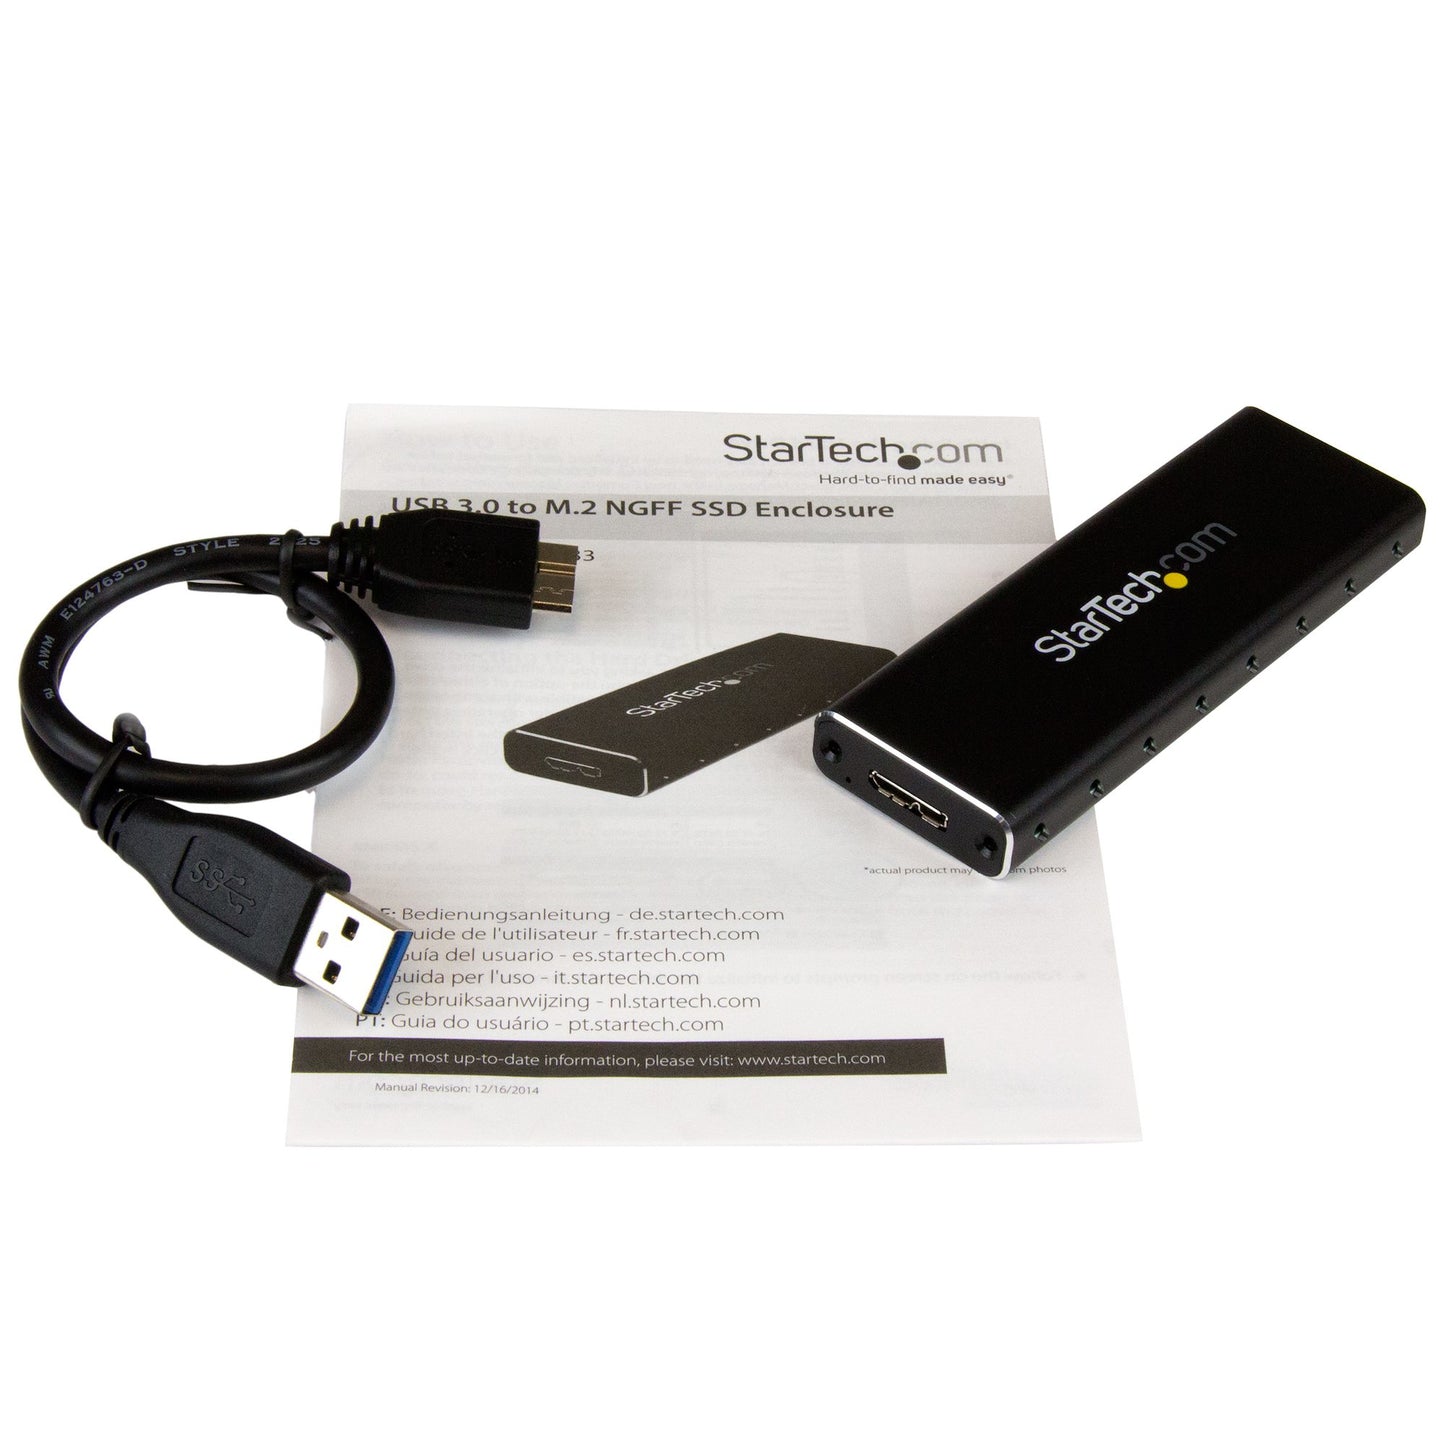 StarTech.com M.2 SSD Enclosure for M.2 SATA SSDs - USB 3.0 (5Gbps) with UASP-5